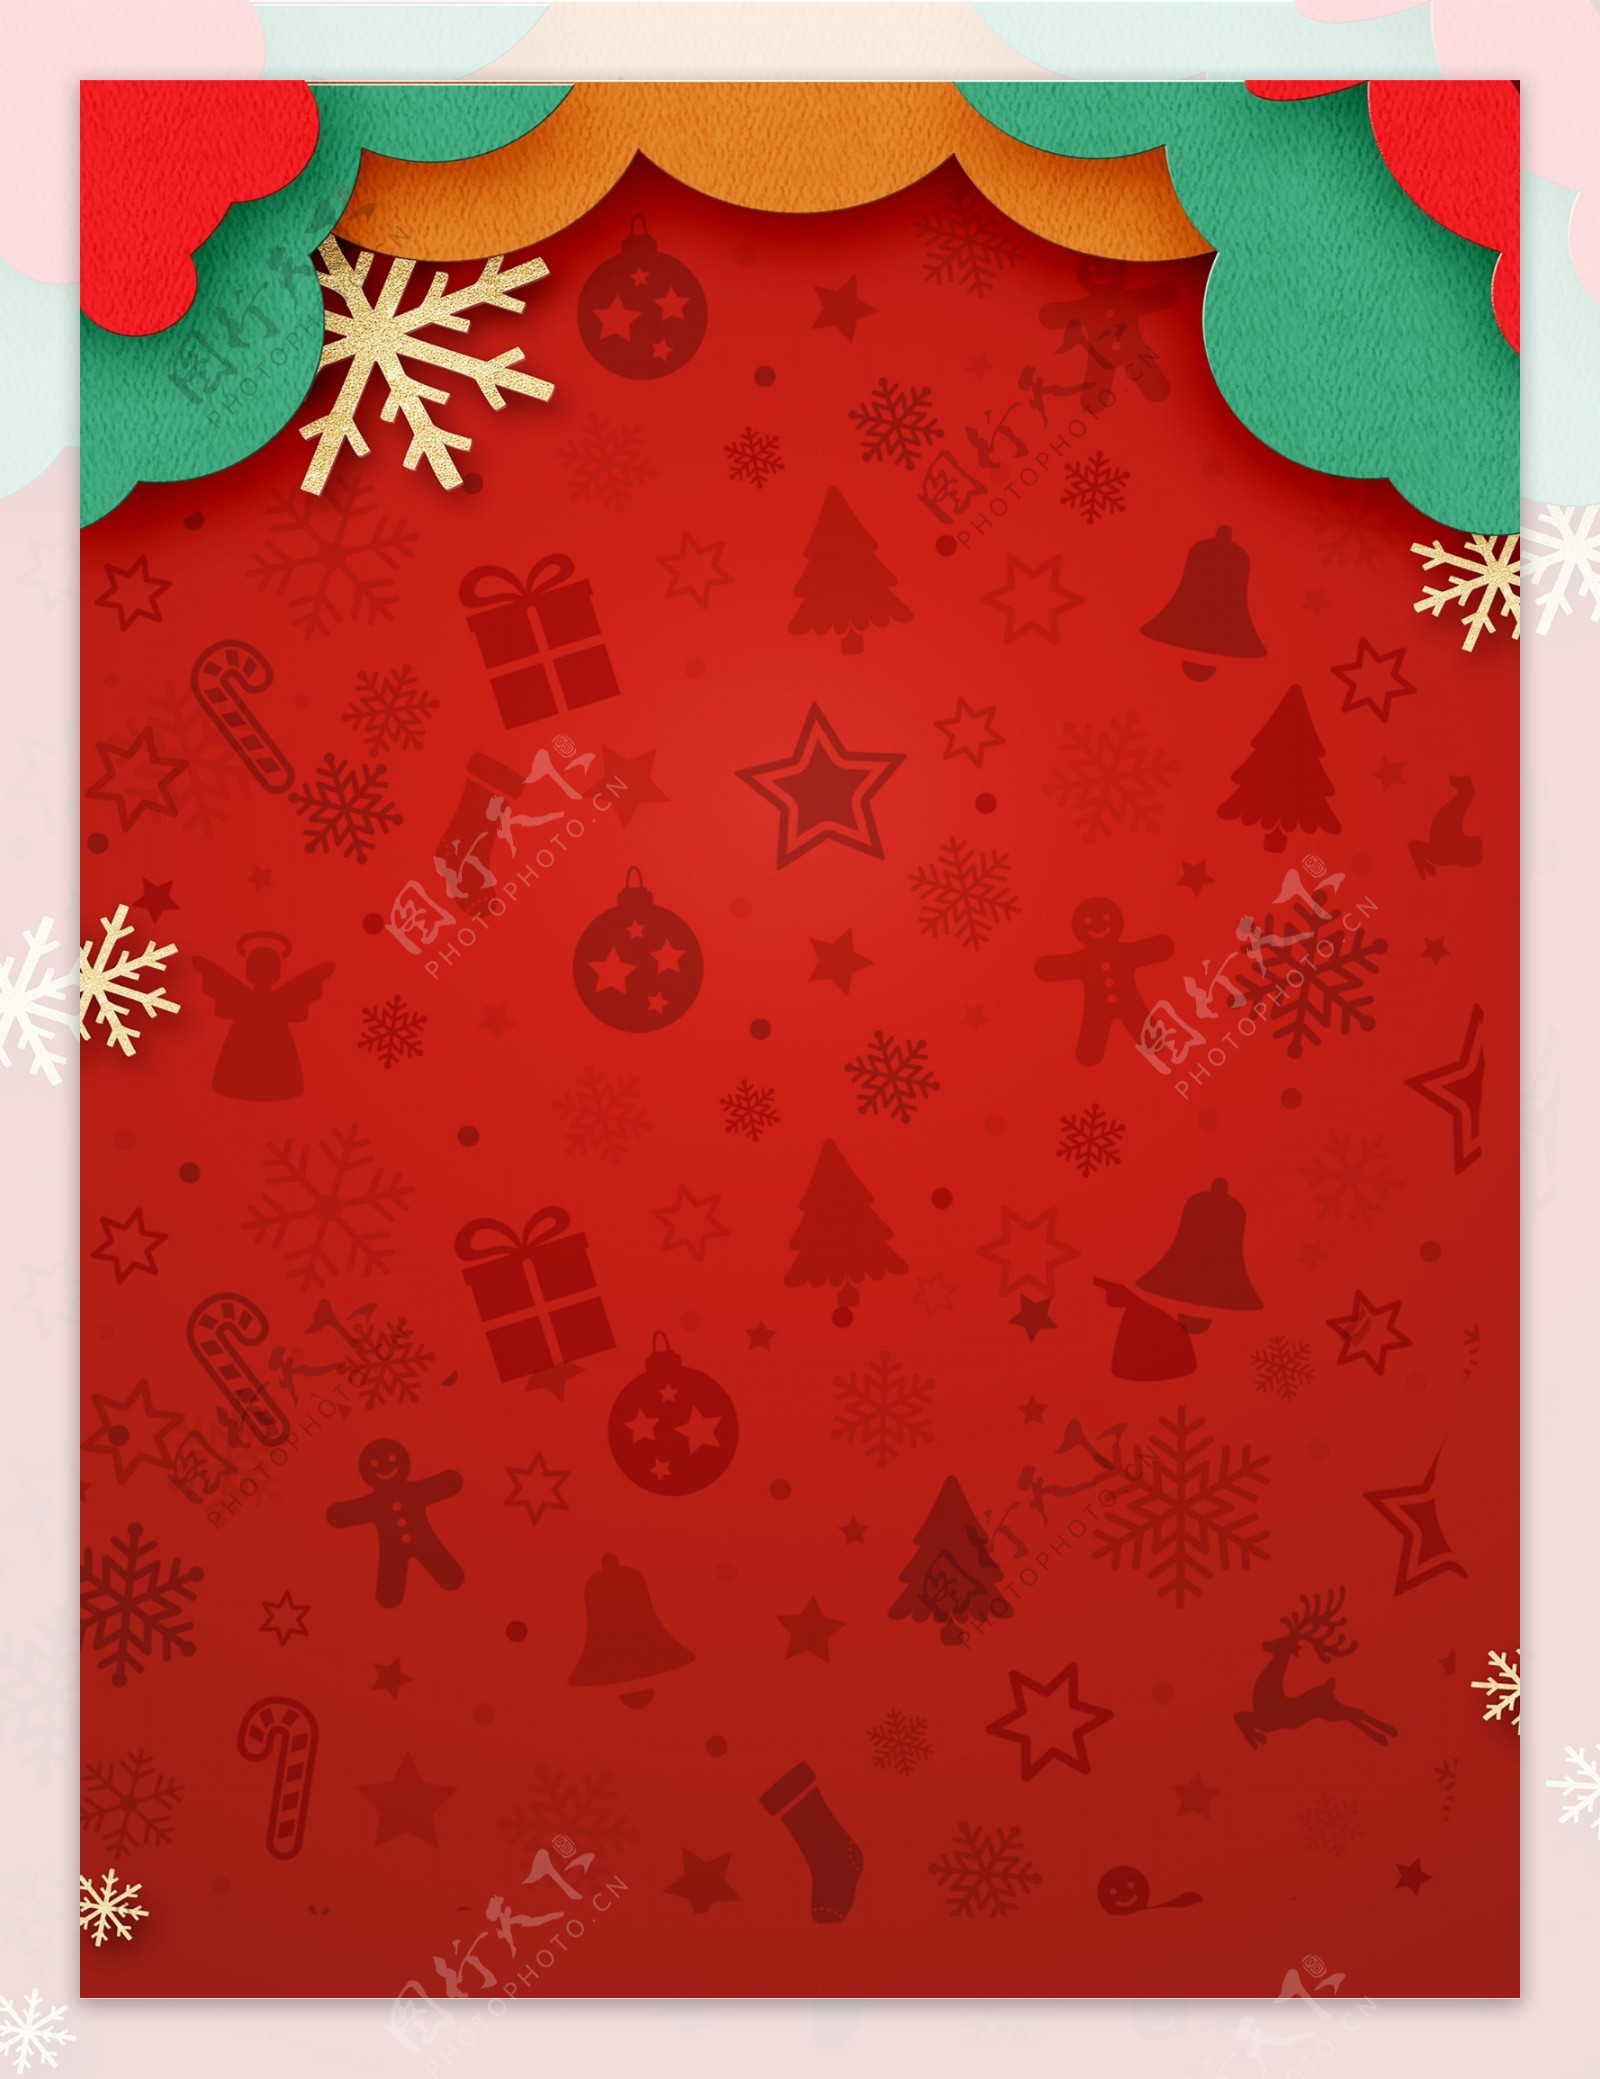 简约纸片风圣诞狂欢红色背景素材